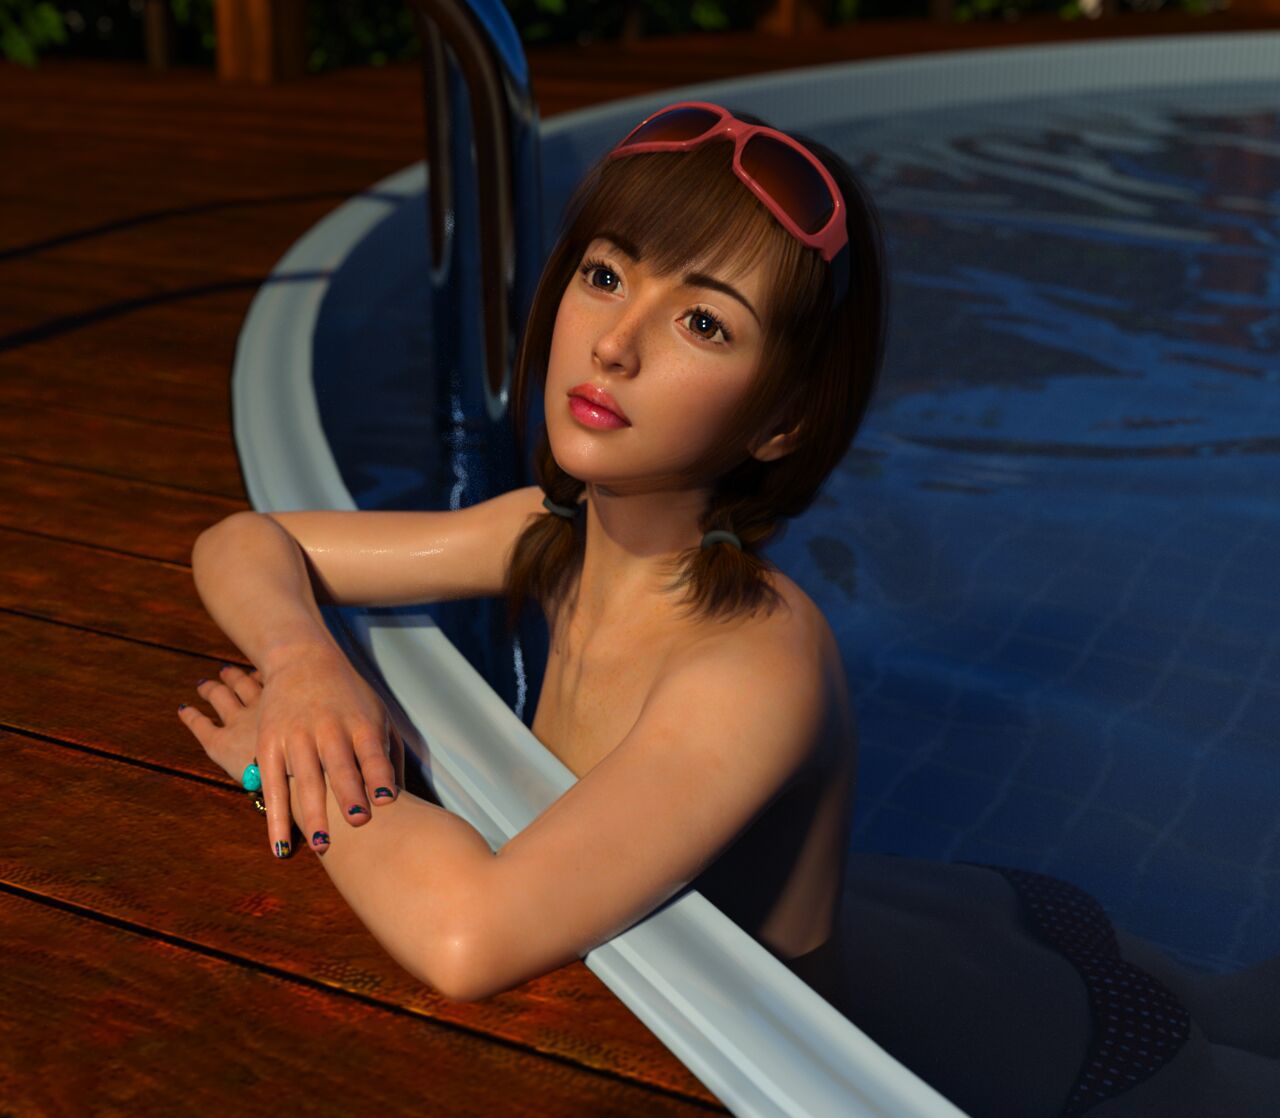 [DICK] Brunette Teen Girl at Pool (93665321) 13